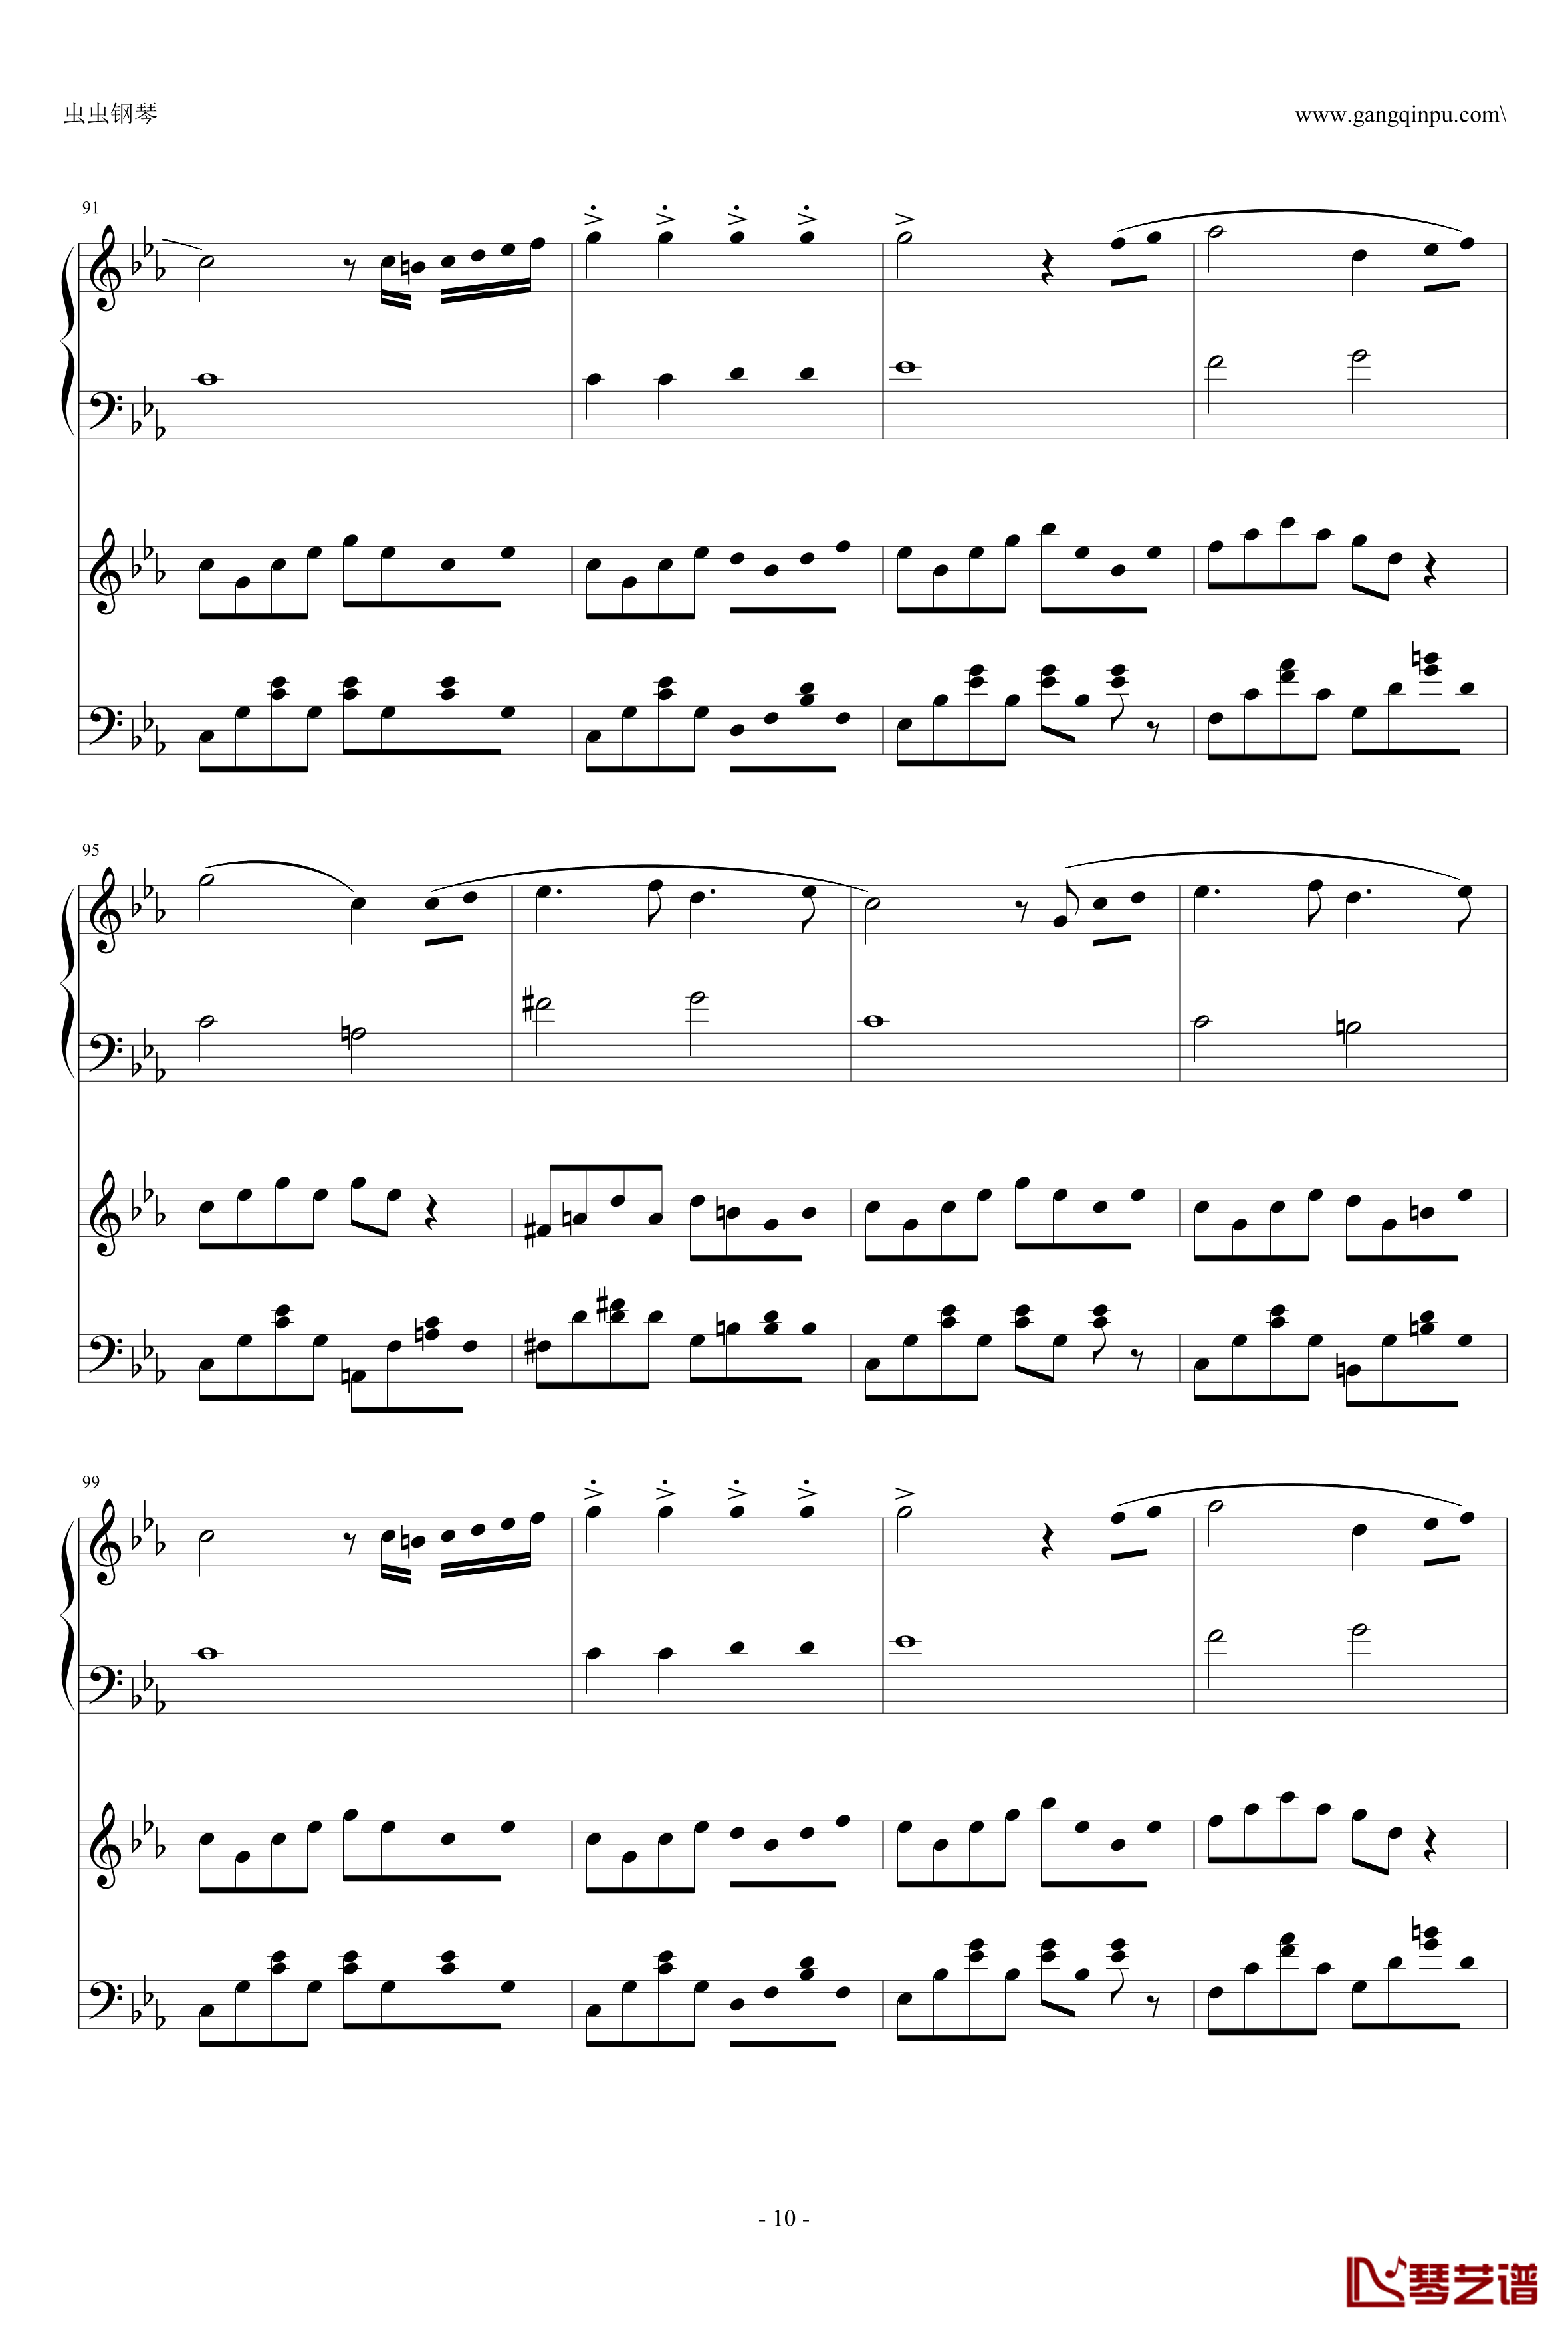 悲怆第三章钢琴谱-乐动达人-贝多芬-beethoven10